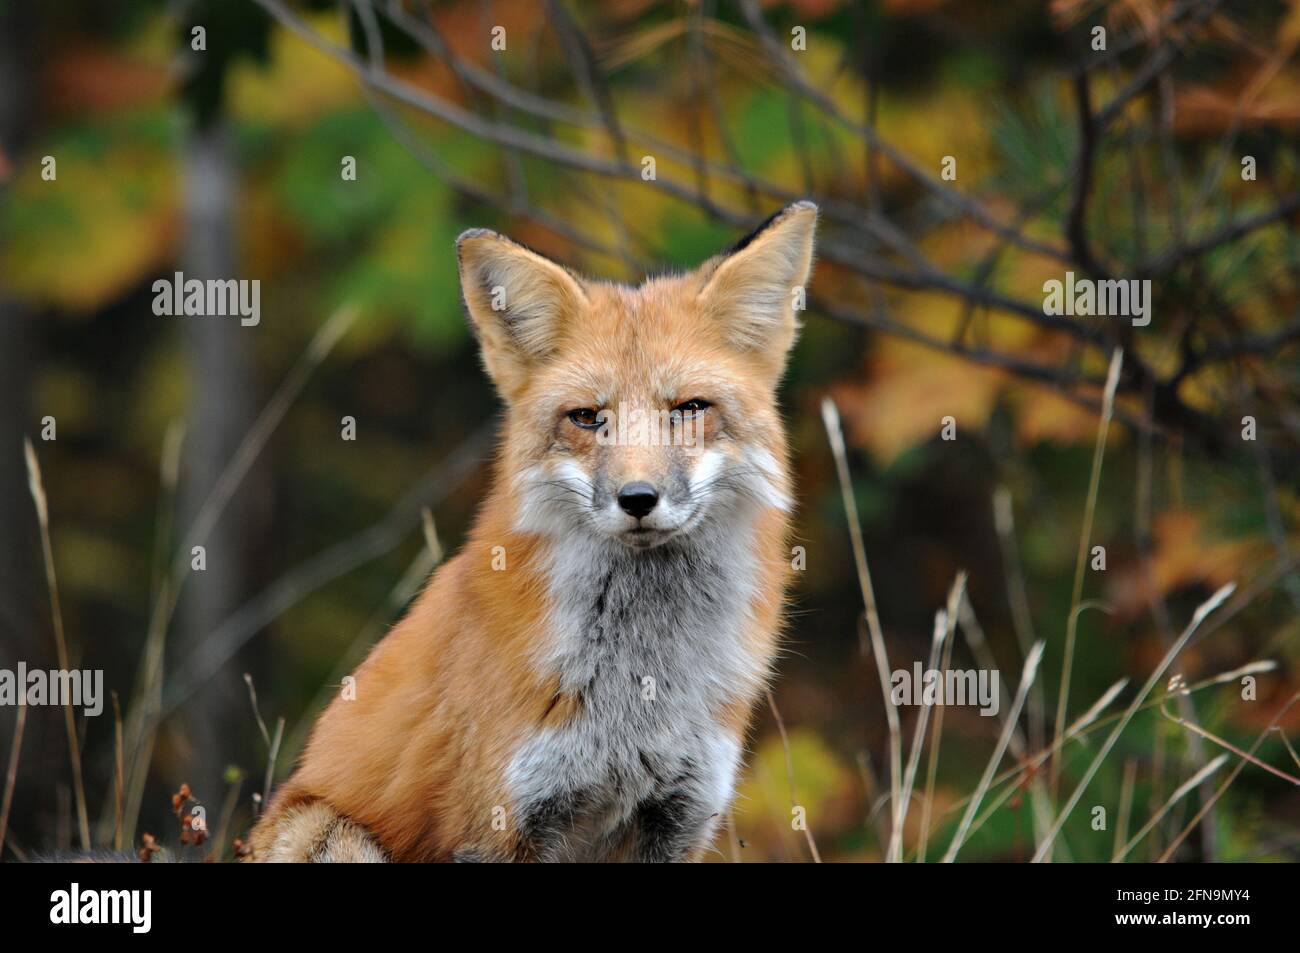 Vista ravvicinata del profilo della testa della volpe rossa con un aspetto triste e uno sfondo sfocato nel suo ambiente e habitat. Immagine FOX. Immagine. Verticale. Fox St Foto Stock